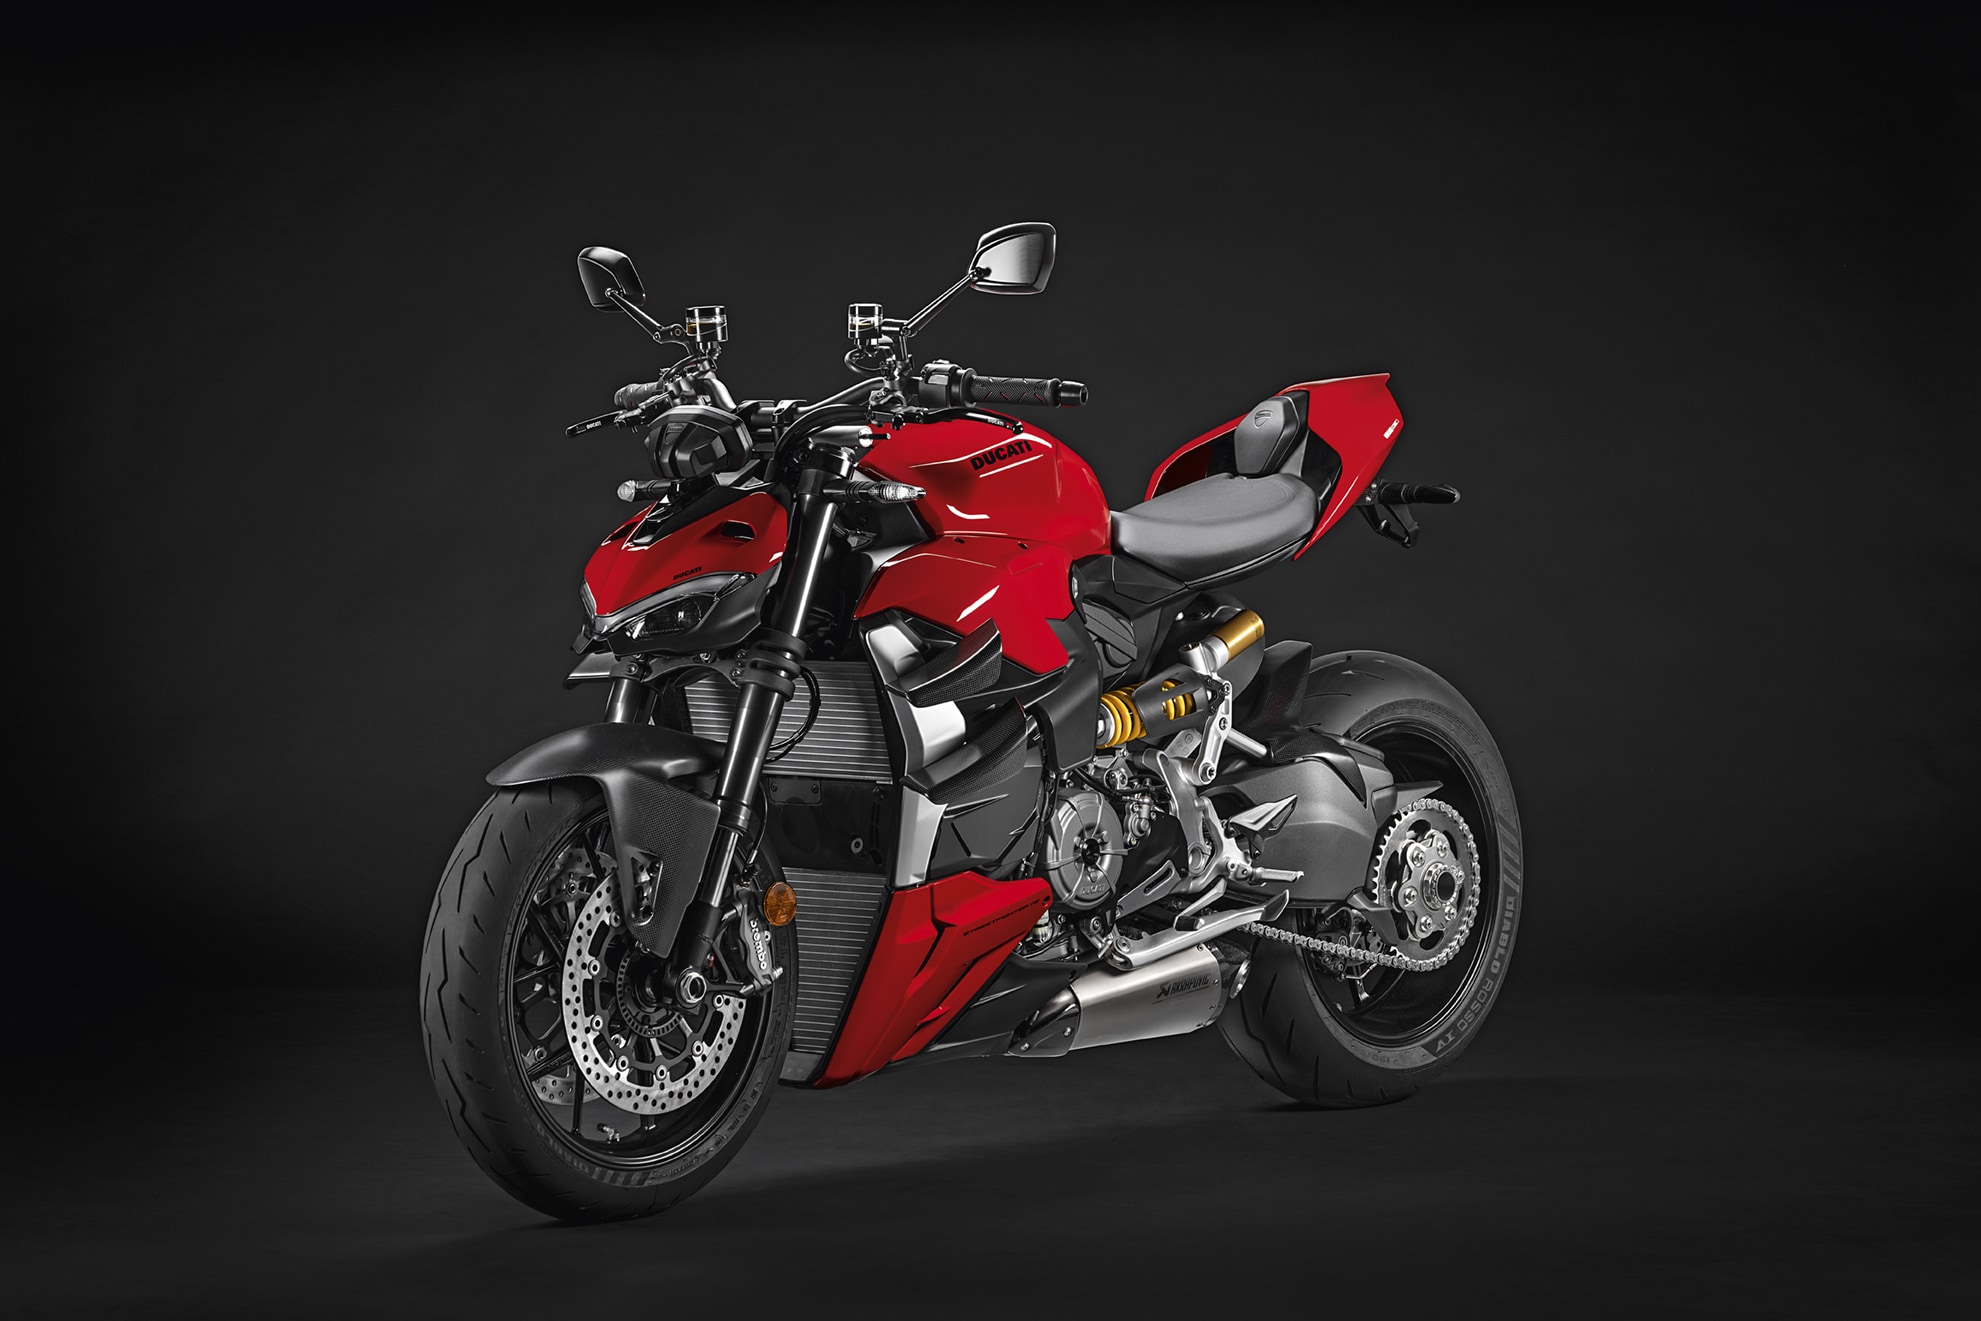 Ducati Streetfighter V2 – Acessórios Ducati Performance para melhorar o design e a performance